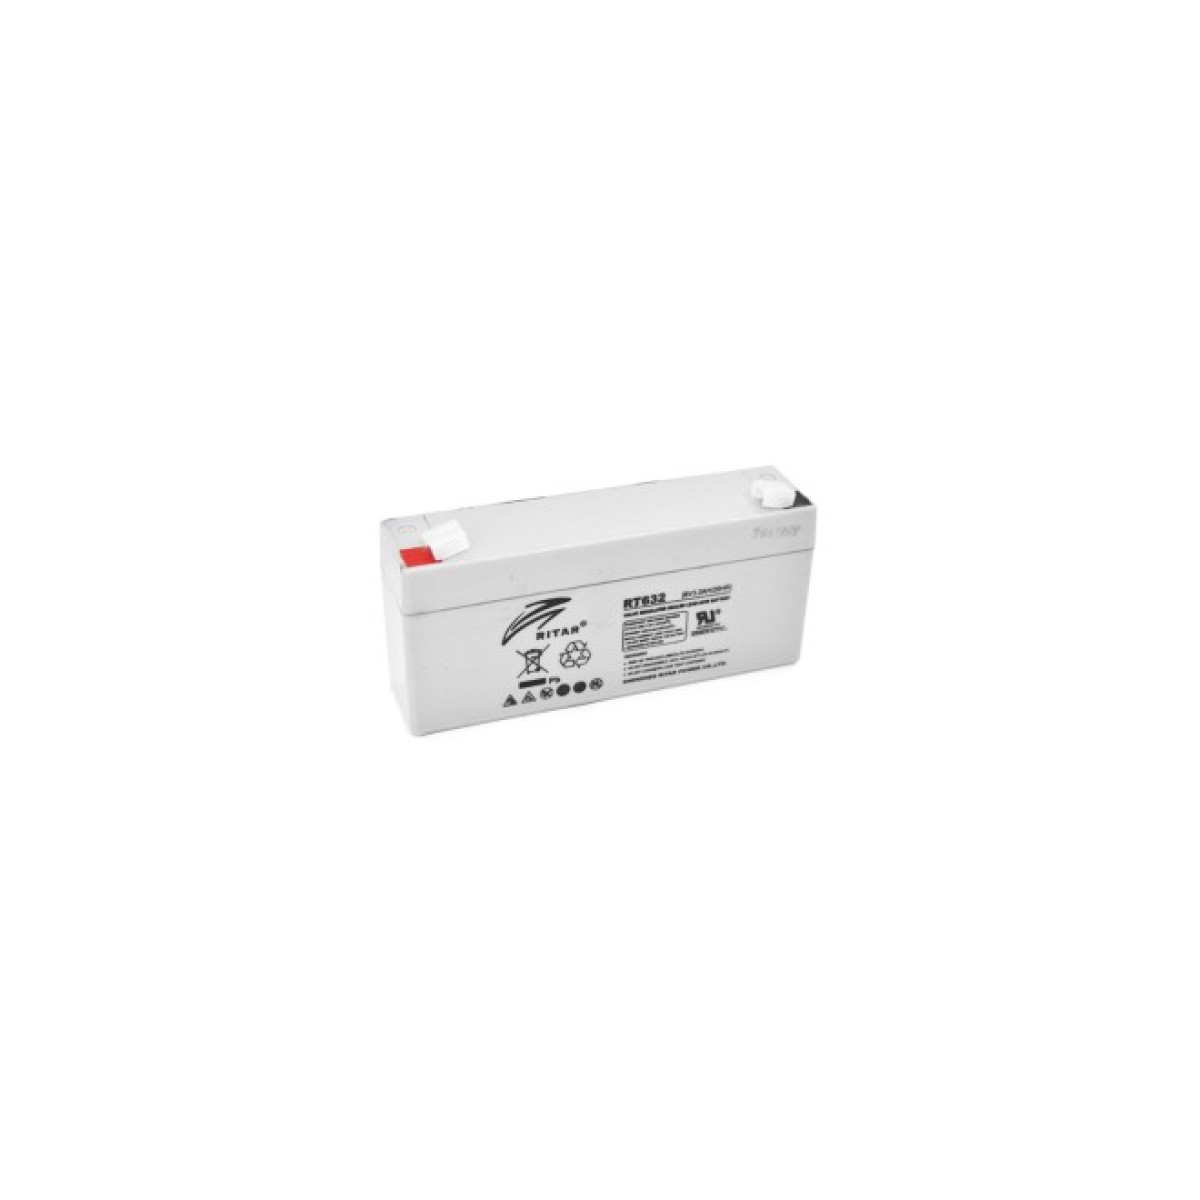 Батарея до ДБЖ Ritar AGM RT632, 6V-3.2Ah (RT632) 256_256.jpg